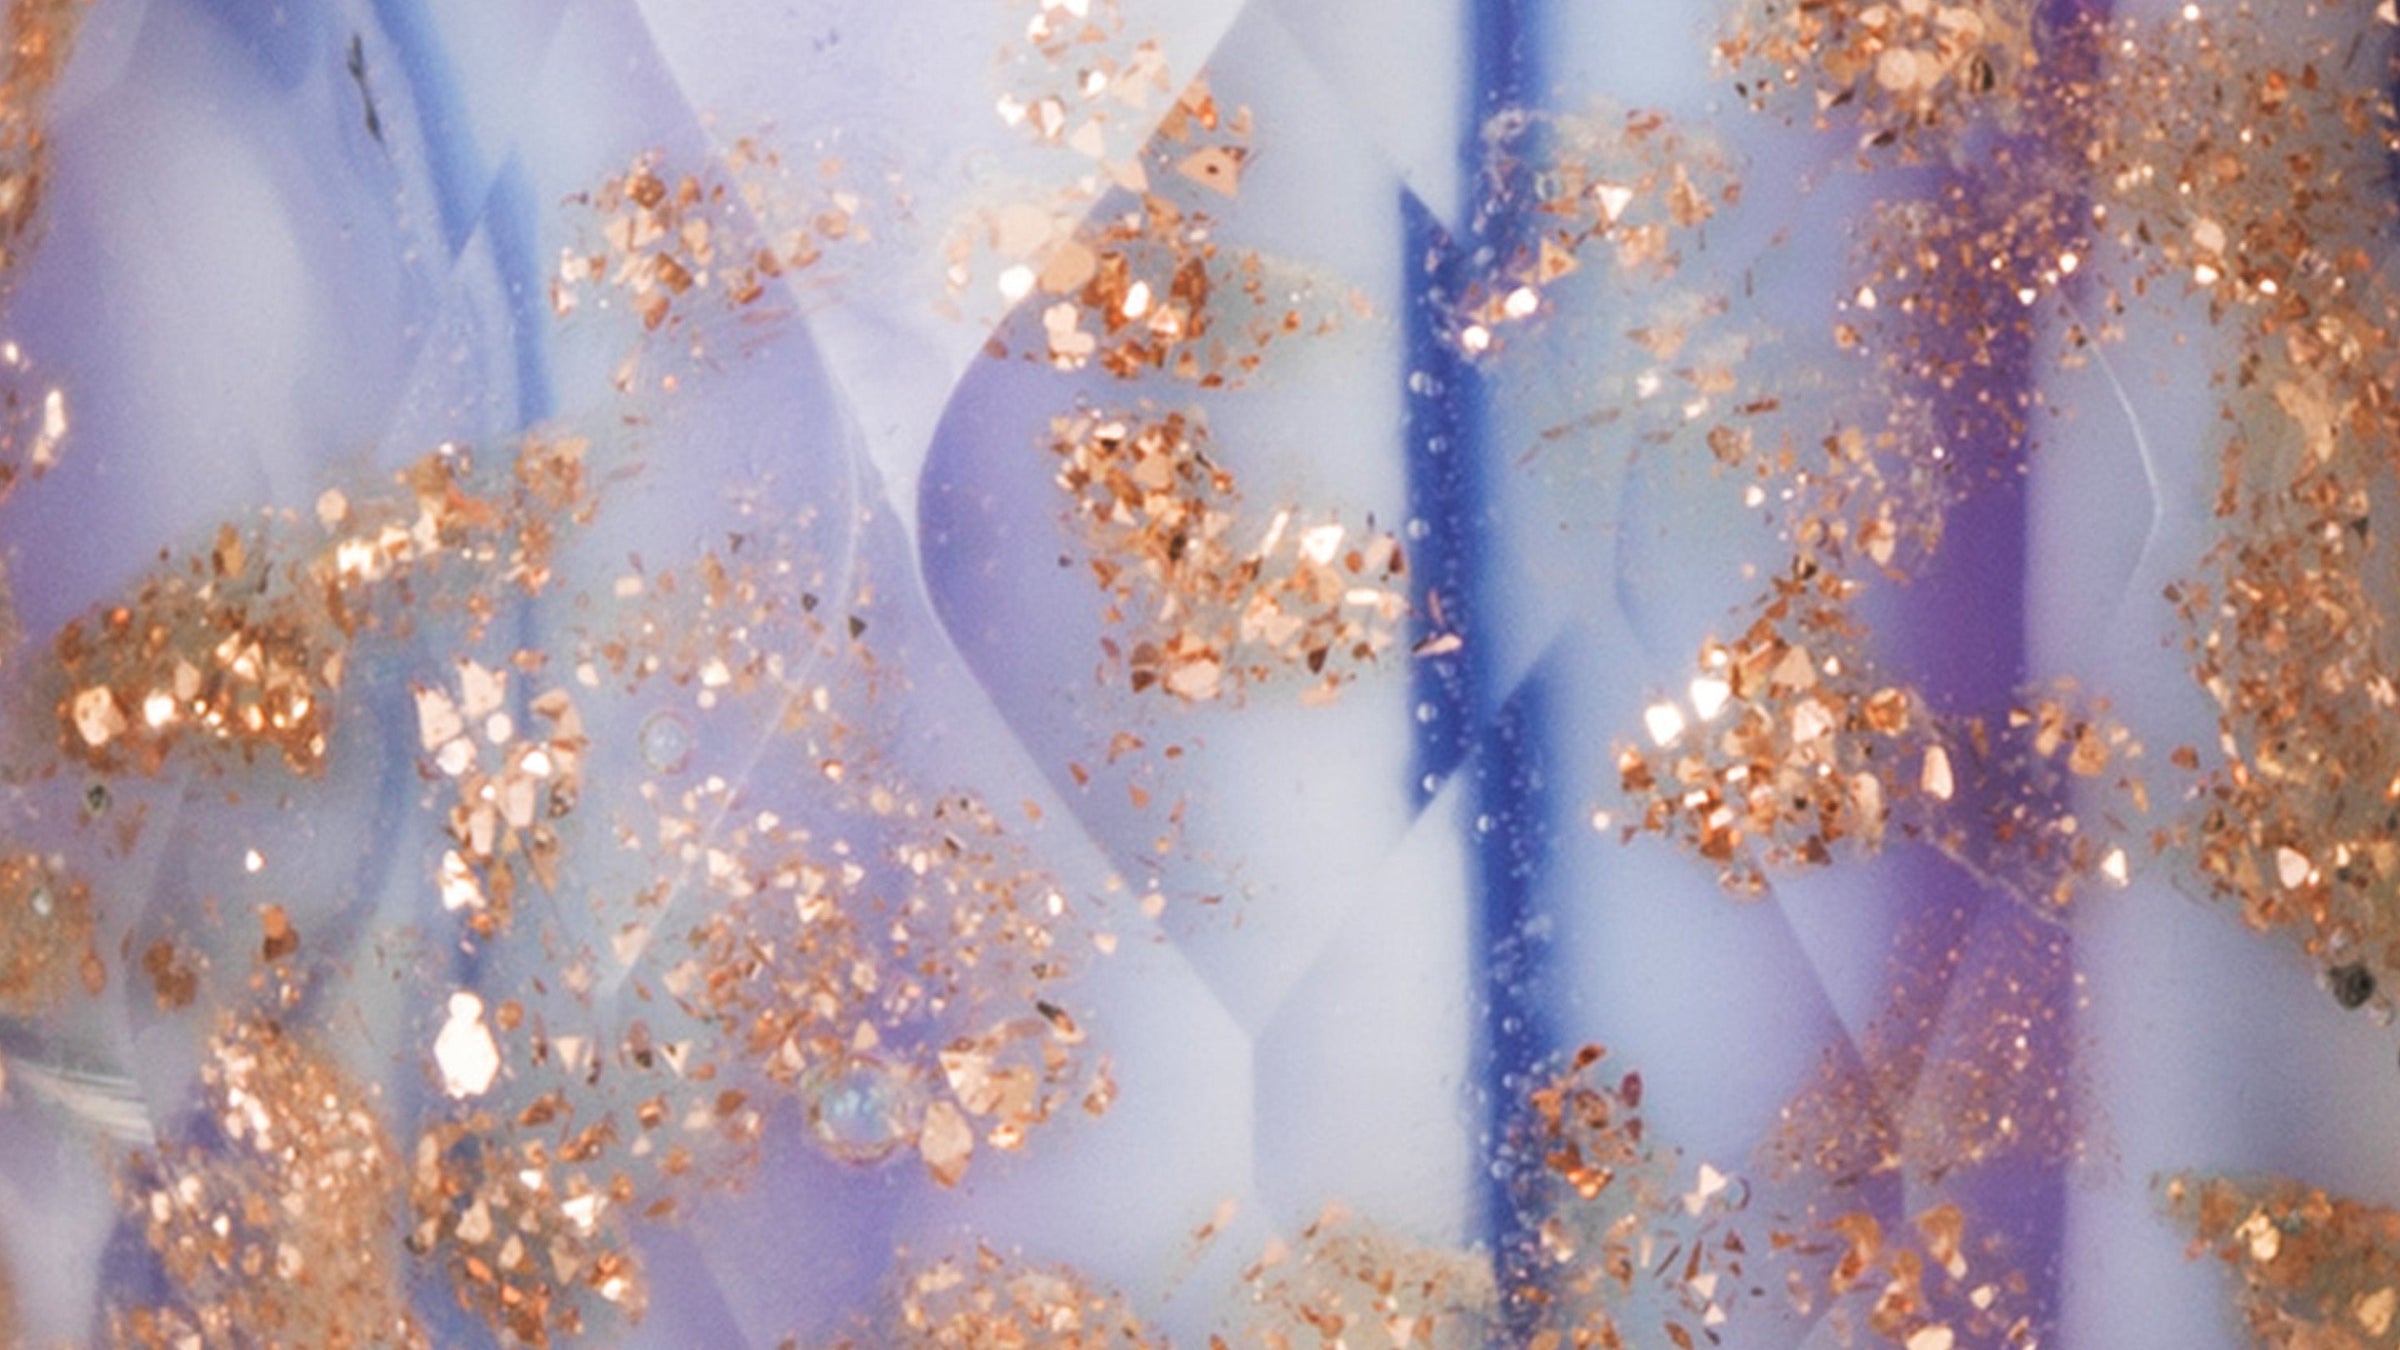 Gros plan sur la perle de verre Violet conviction. Cette perle de verre facetté présente des couleurs violettes et mauves dans un motif rayé, avec des paillettes dorées qui brillent à travers.